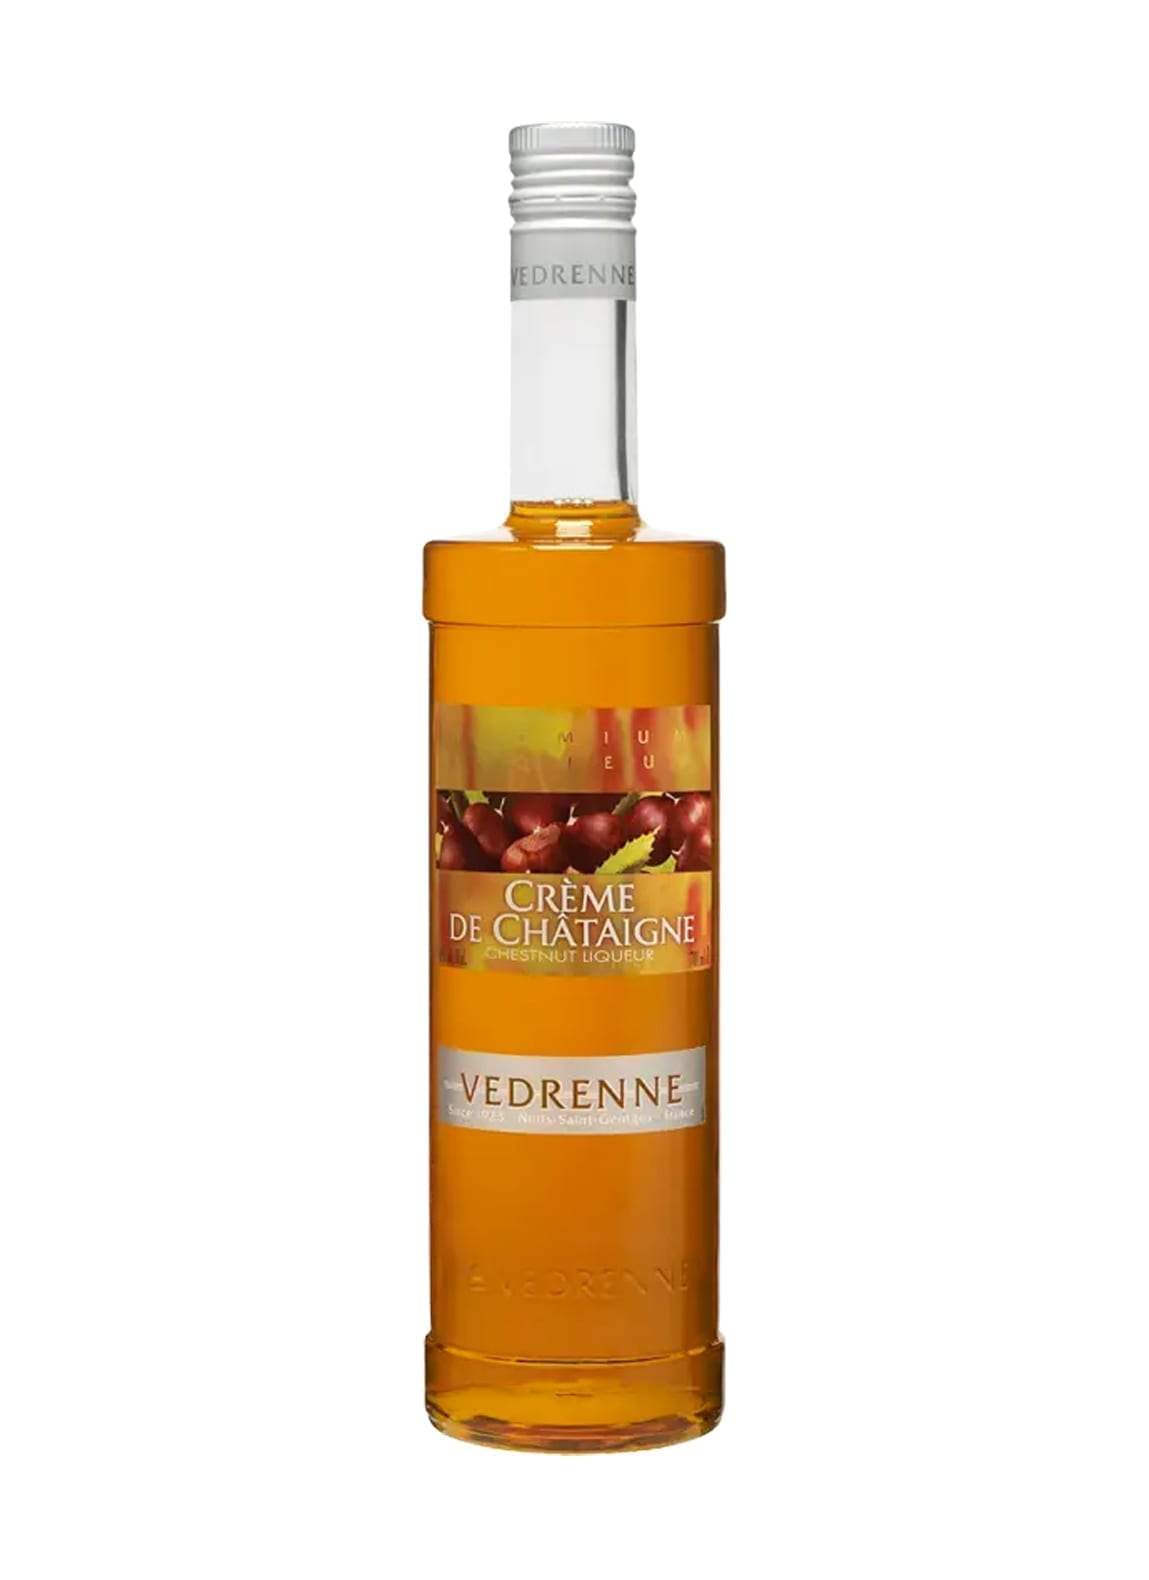 Vedrenne Liqueur Creme de Chataigne (Chestnut) 18% 700ml | Liqueurs | Shop online at Spirits of France